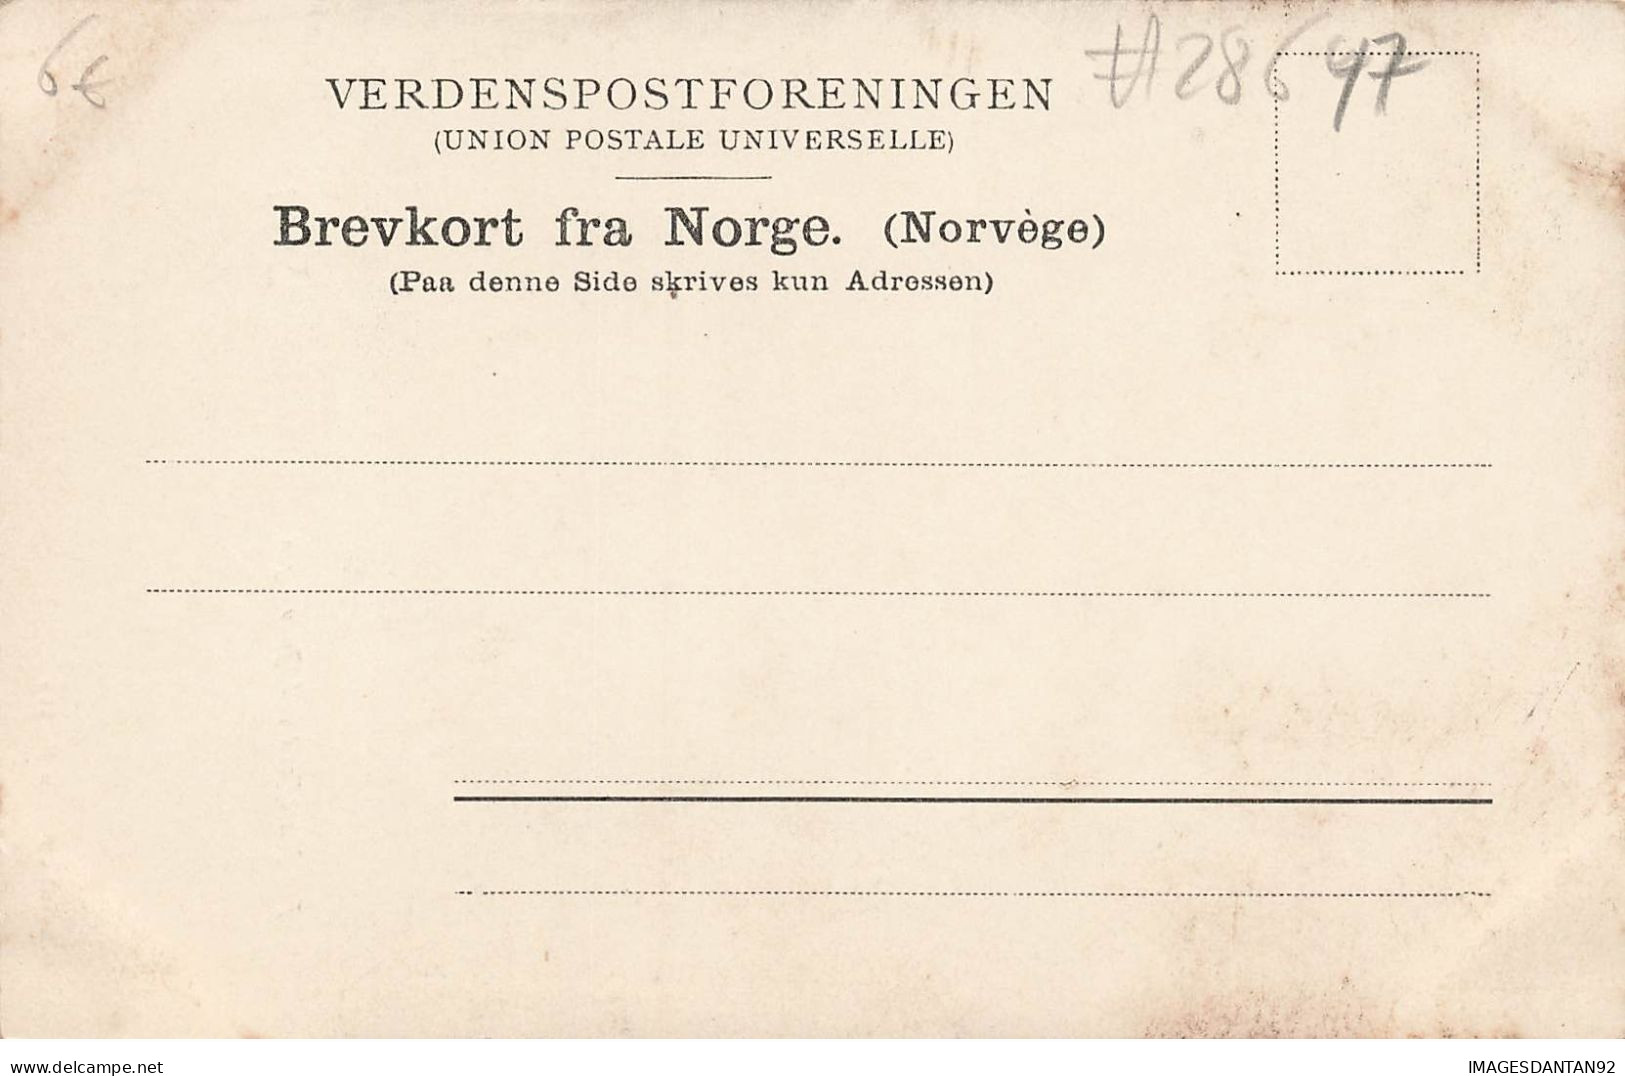 NORVEGE #28647 NORWEGEN SOGN FRA NOERDFJORD VED GUDVANGEN - Norway